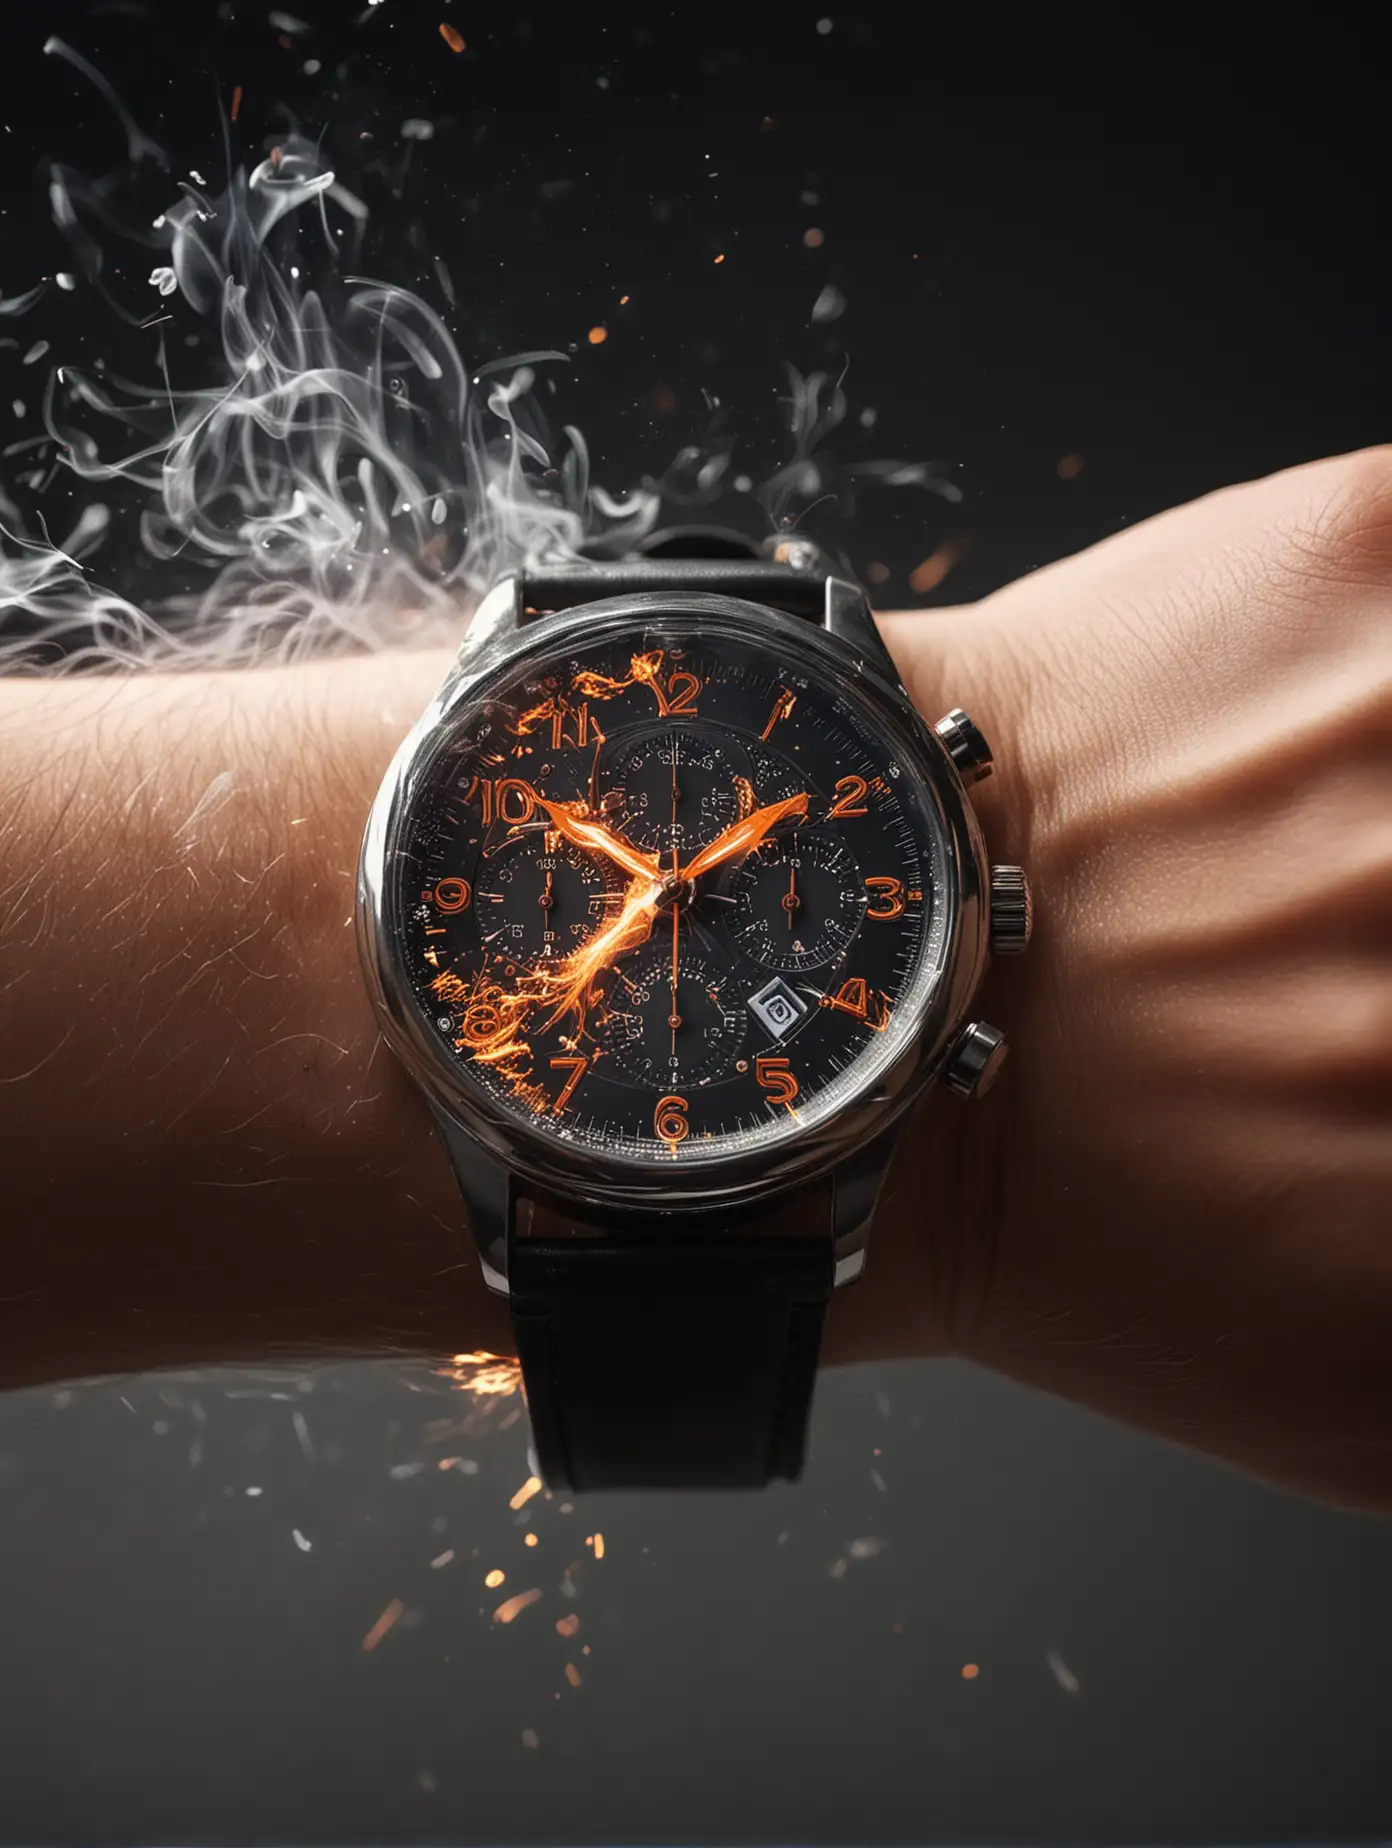 Dynamic Wrist Watch with Sparks and Smoke